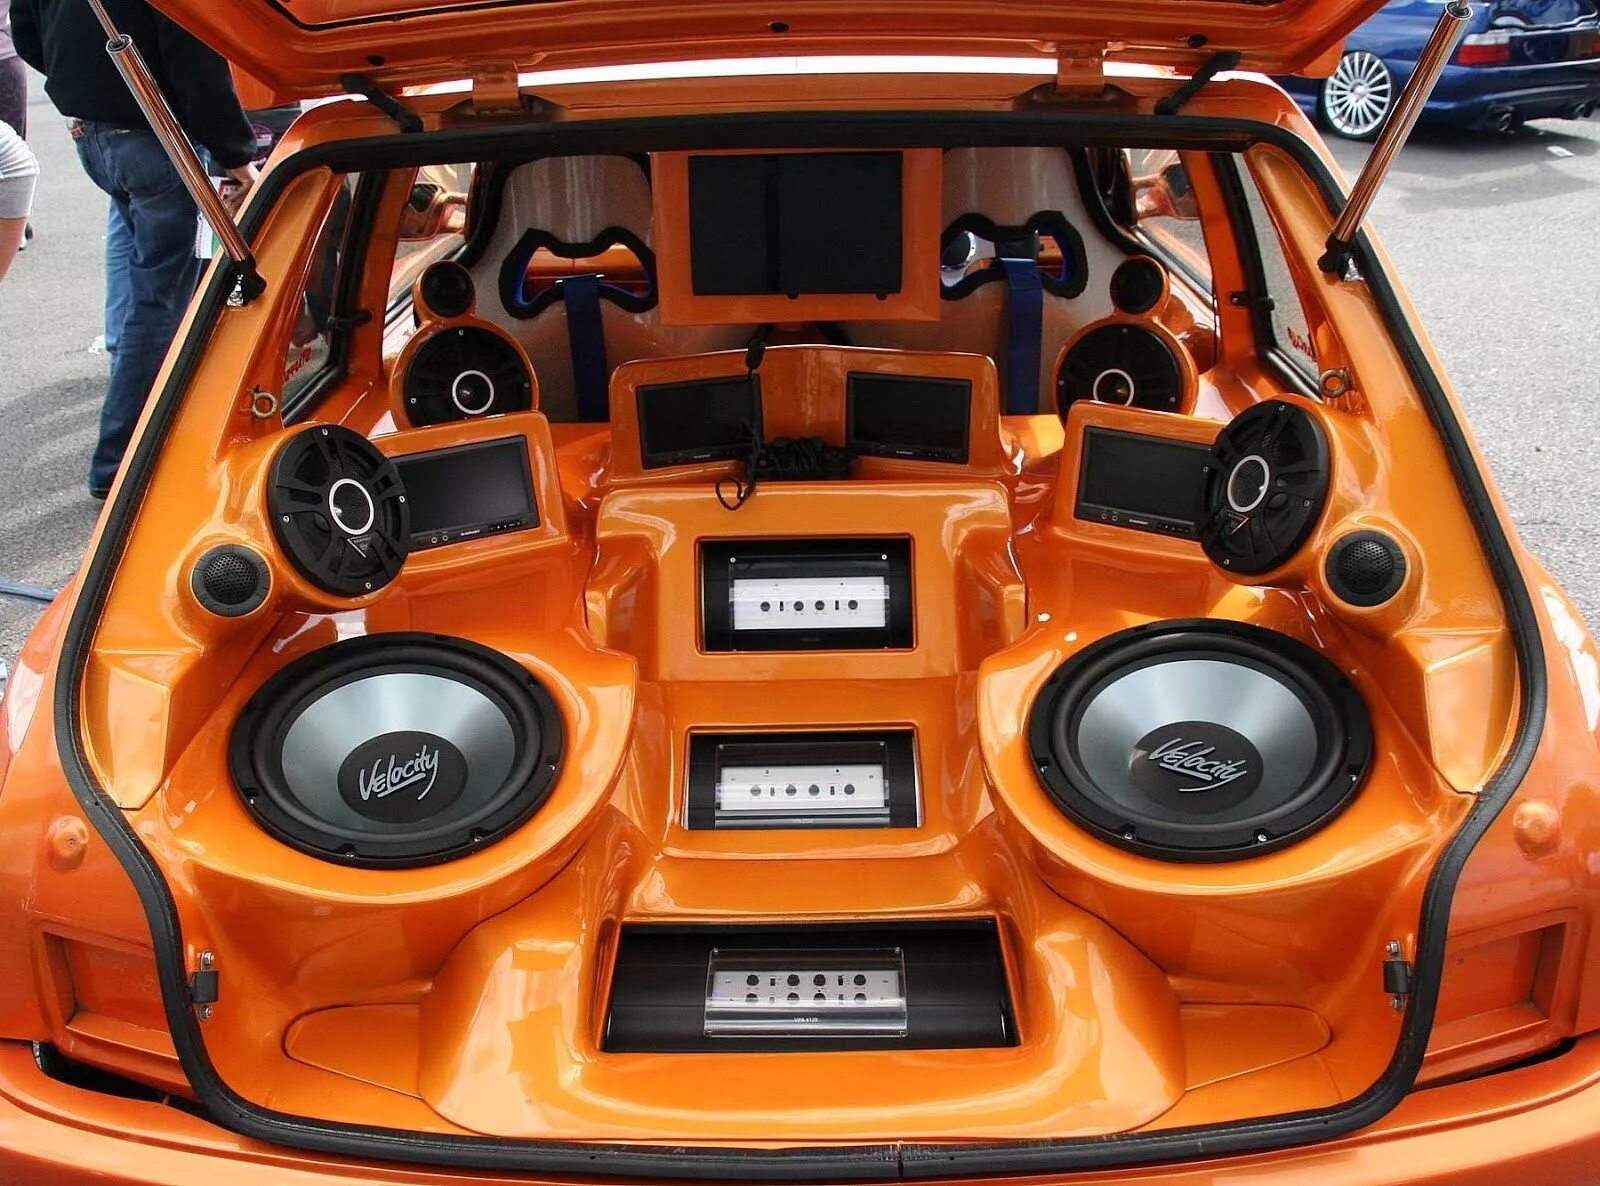 Car music музыка. Car Audio автомобильные динамики. Sq Audio система FG Cruiser. Трехполосная система автозвук. Сабвуфер в машину.